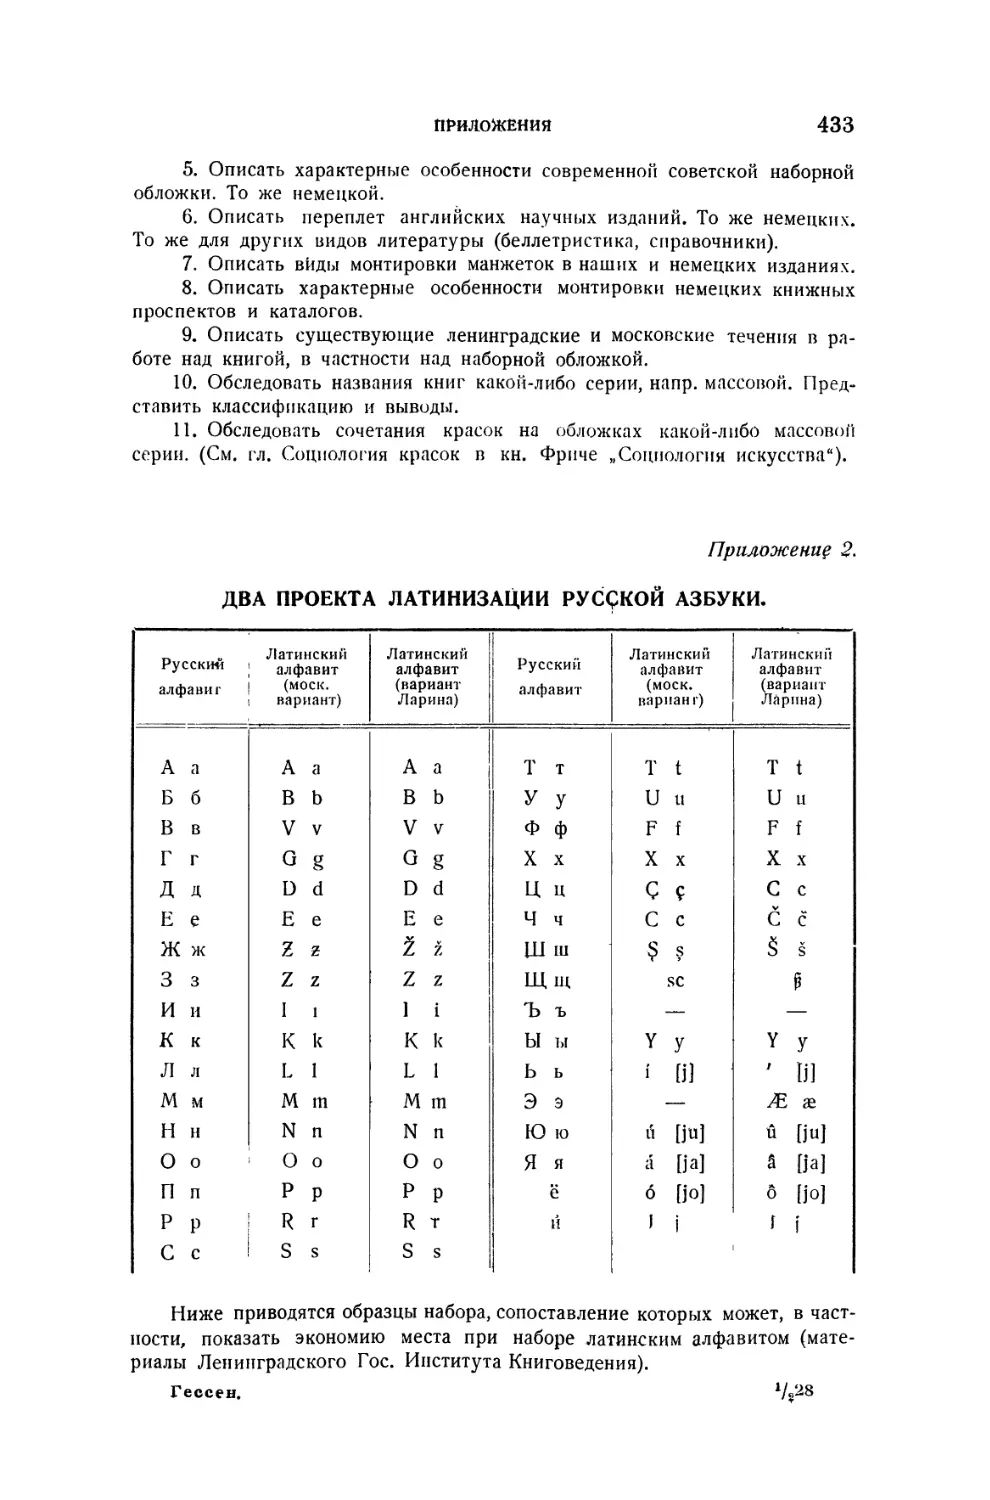 2. Два проекта латинизации русской азбуки